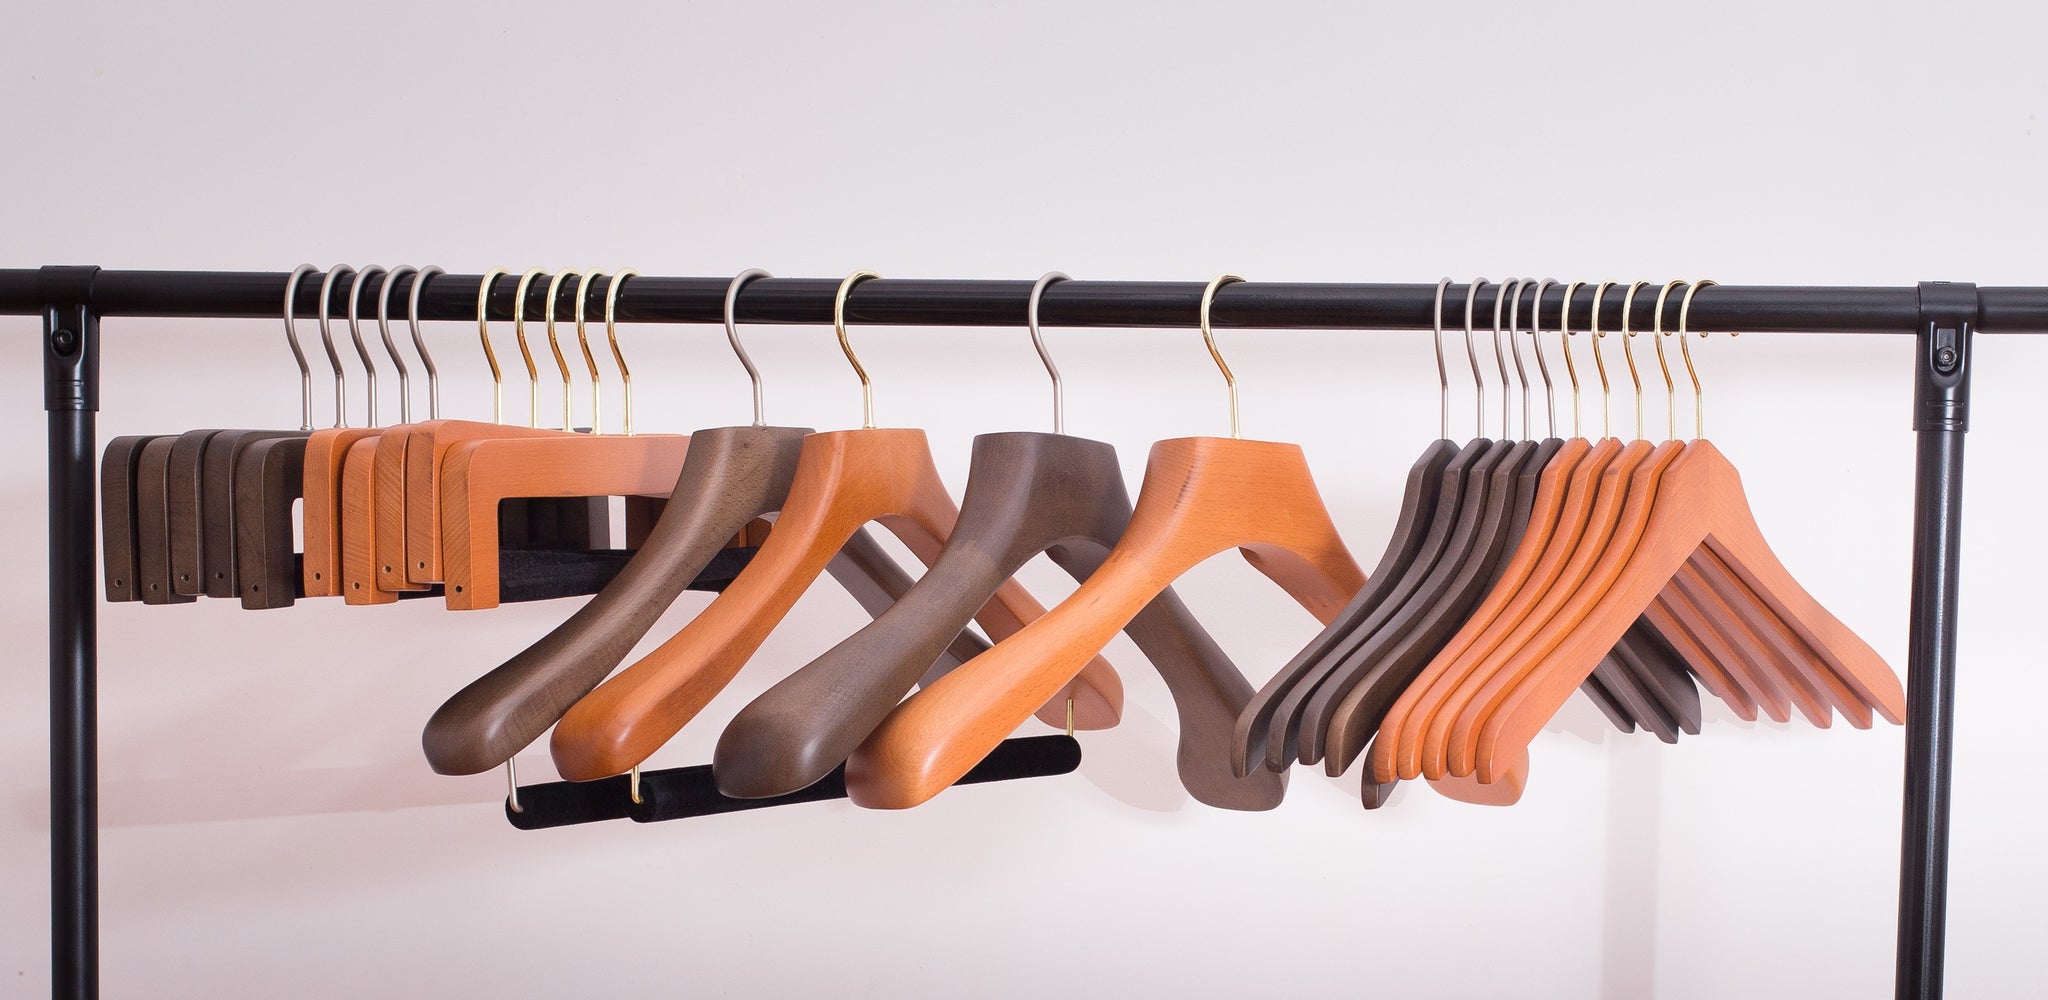 Wooden Suit hangers - Hangers for Men's & Women's Suits